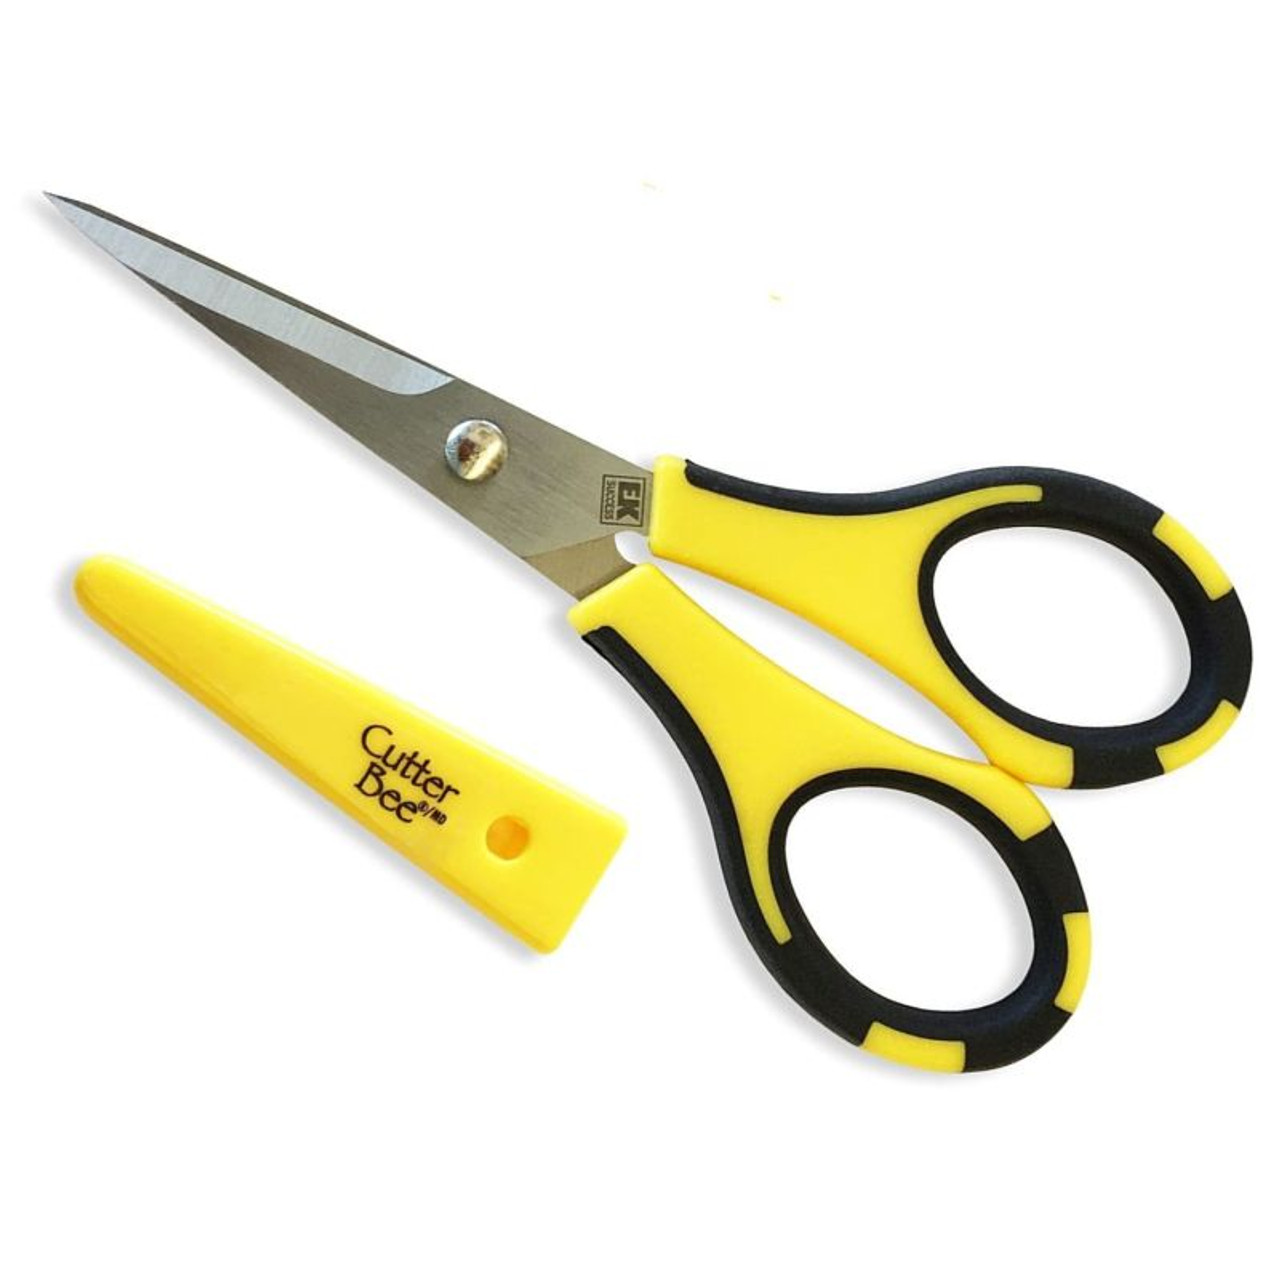 American Crafts™ Cutter Bee™ Herb Scissors Set